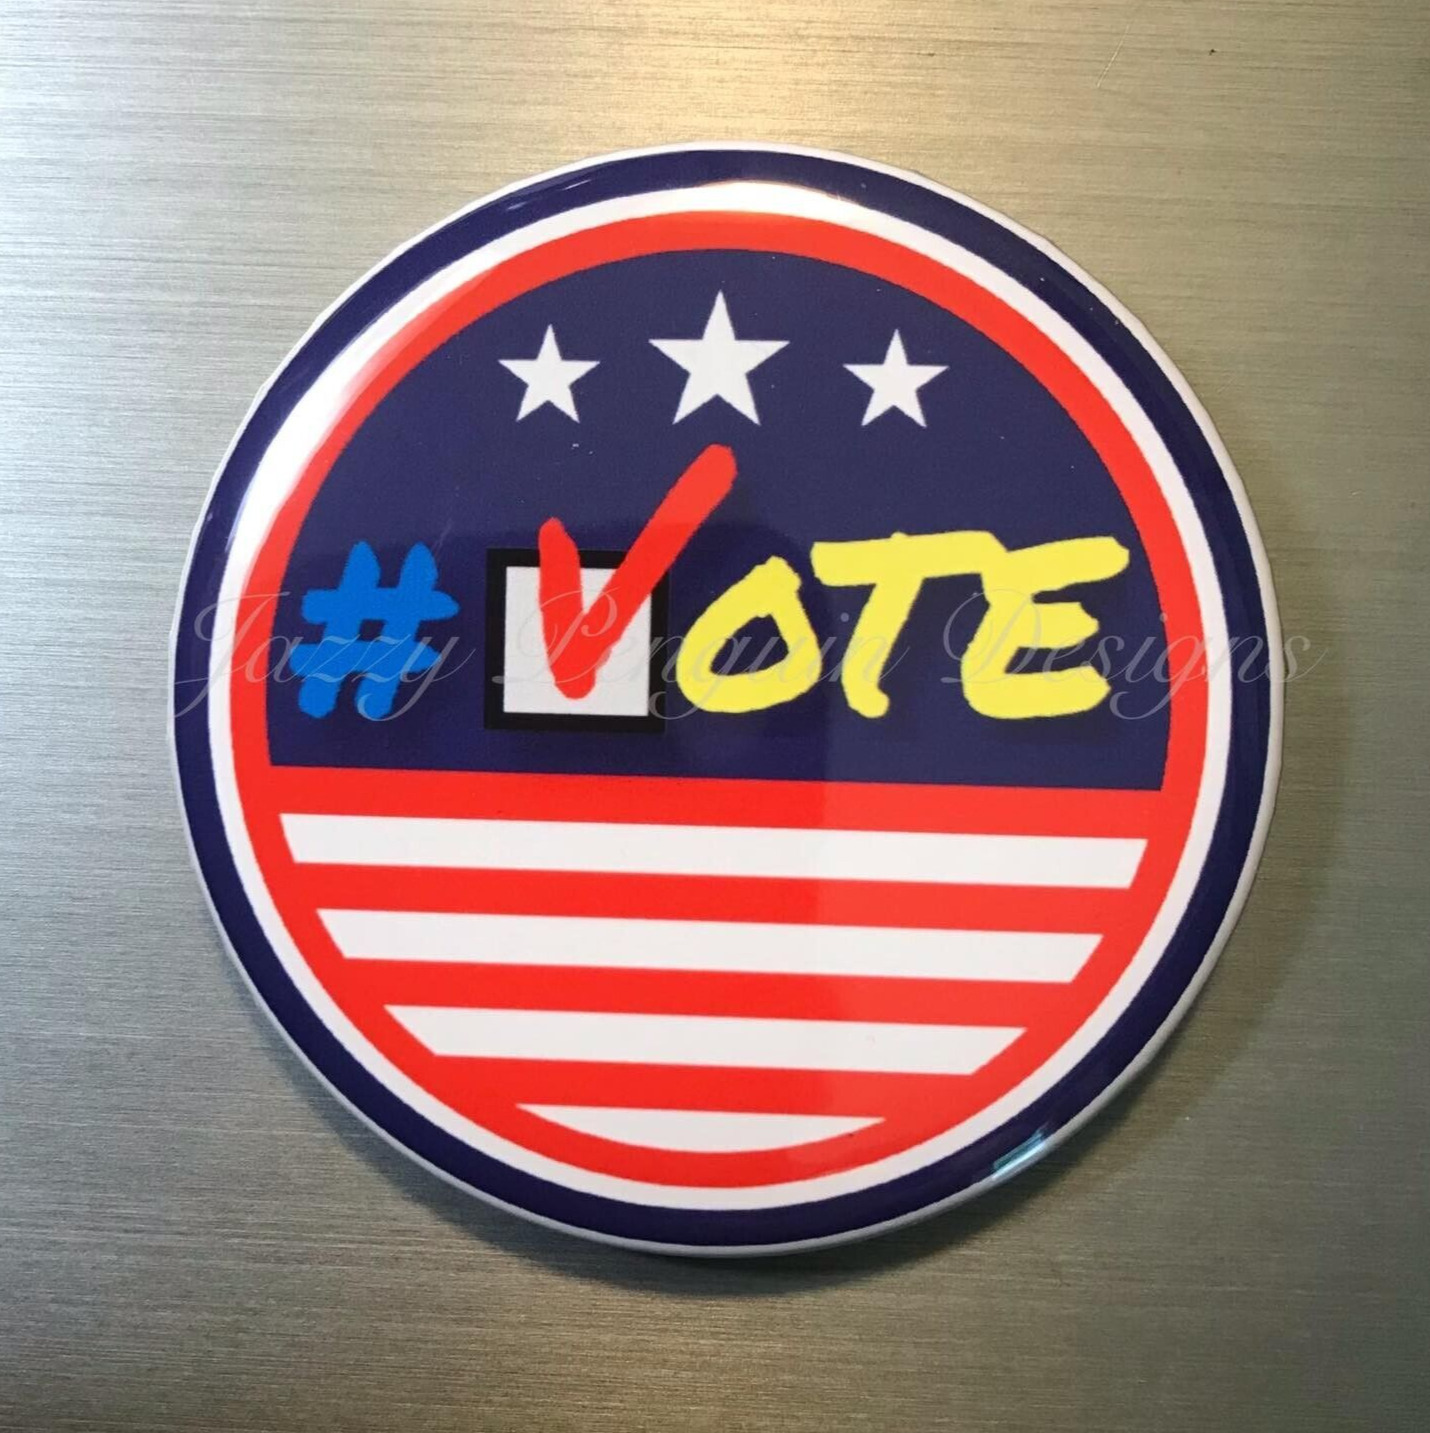 VOTE 2.25” PIN BUTTON BADGE america usa patriotic election campaign politics